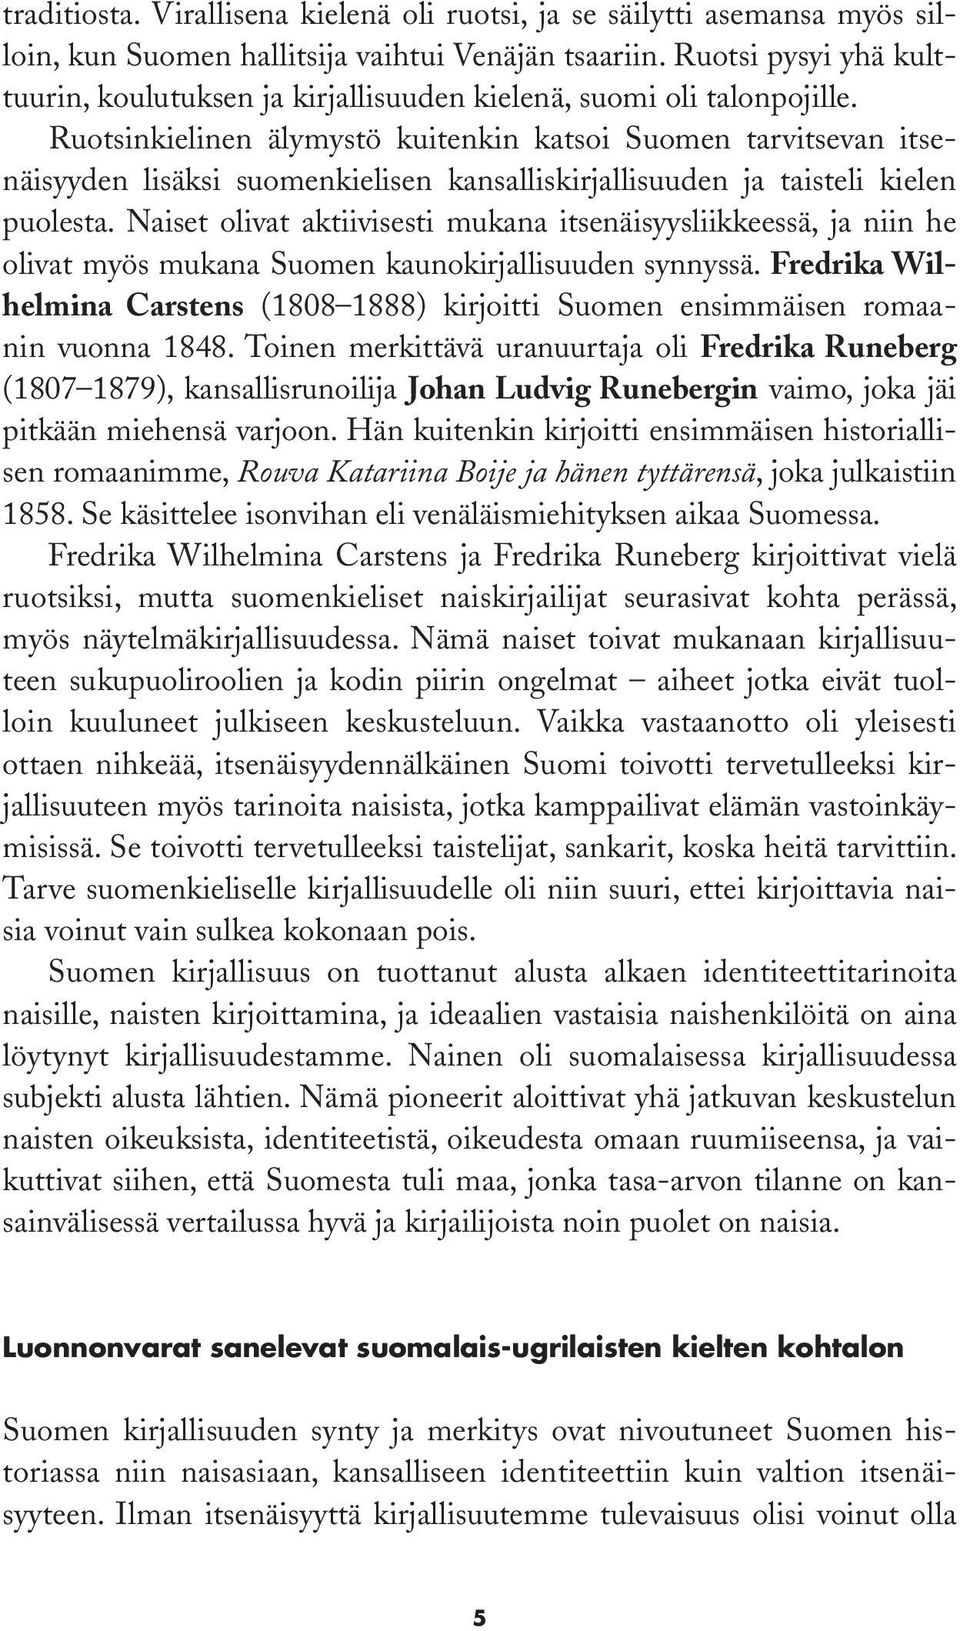 Ruotsinkielinen älymystö kuitenkin katsoi Suomen tarvitsevan itsenäisyyden lisäksi suomenkielisen kansalliskirjallisuuden ja taisteli kielen puolesta.